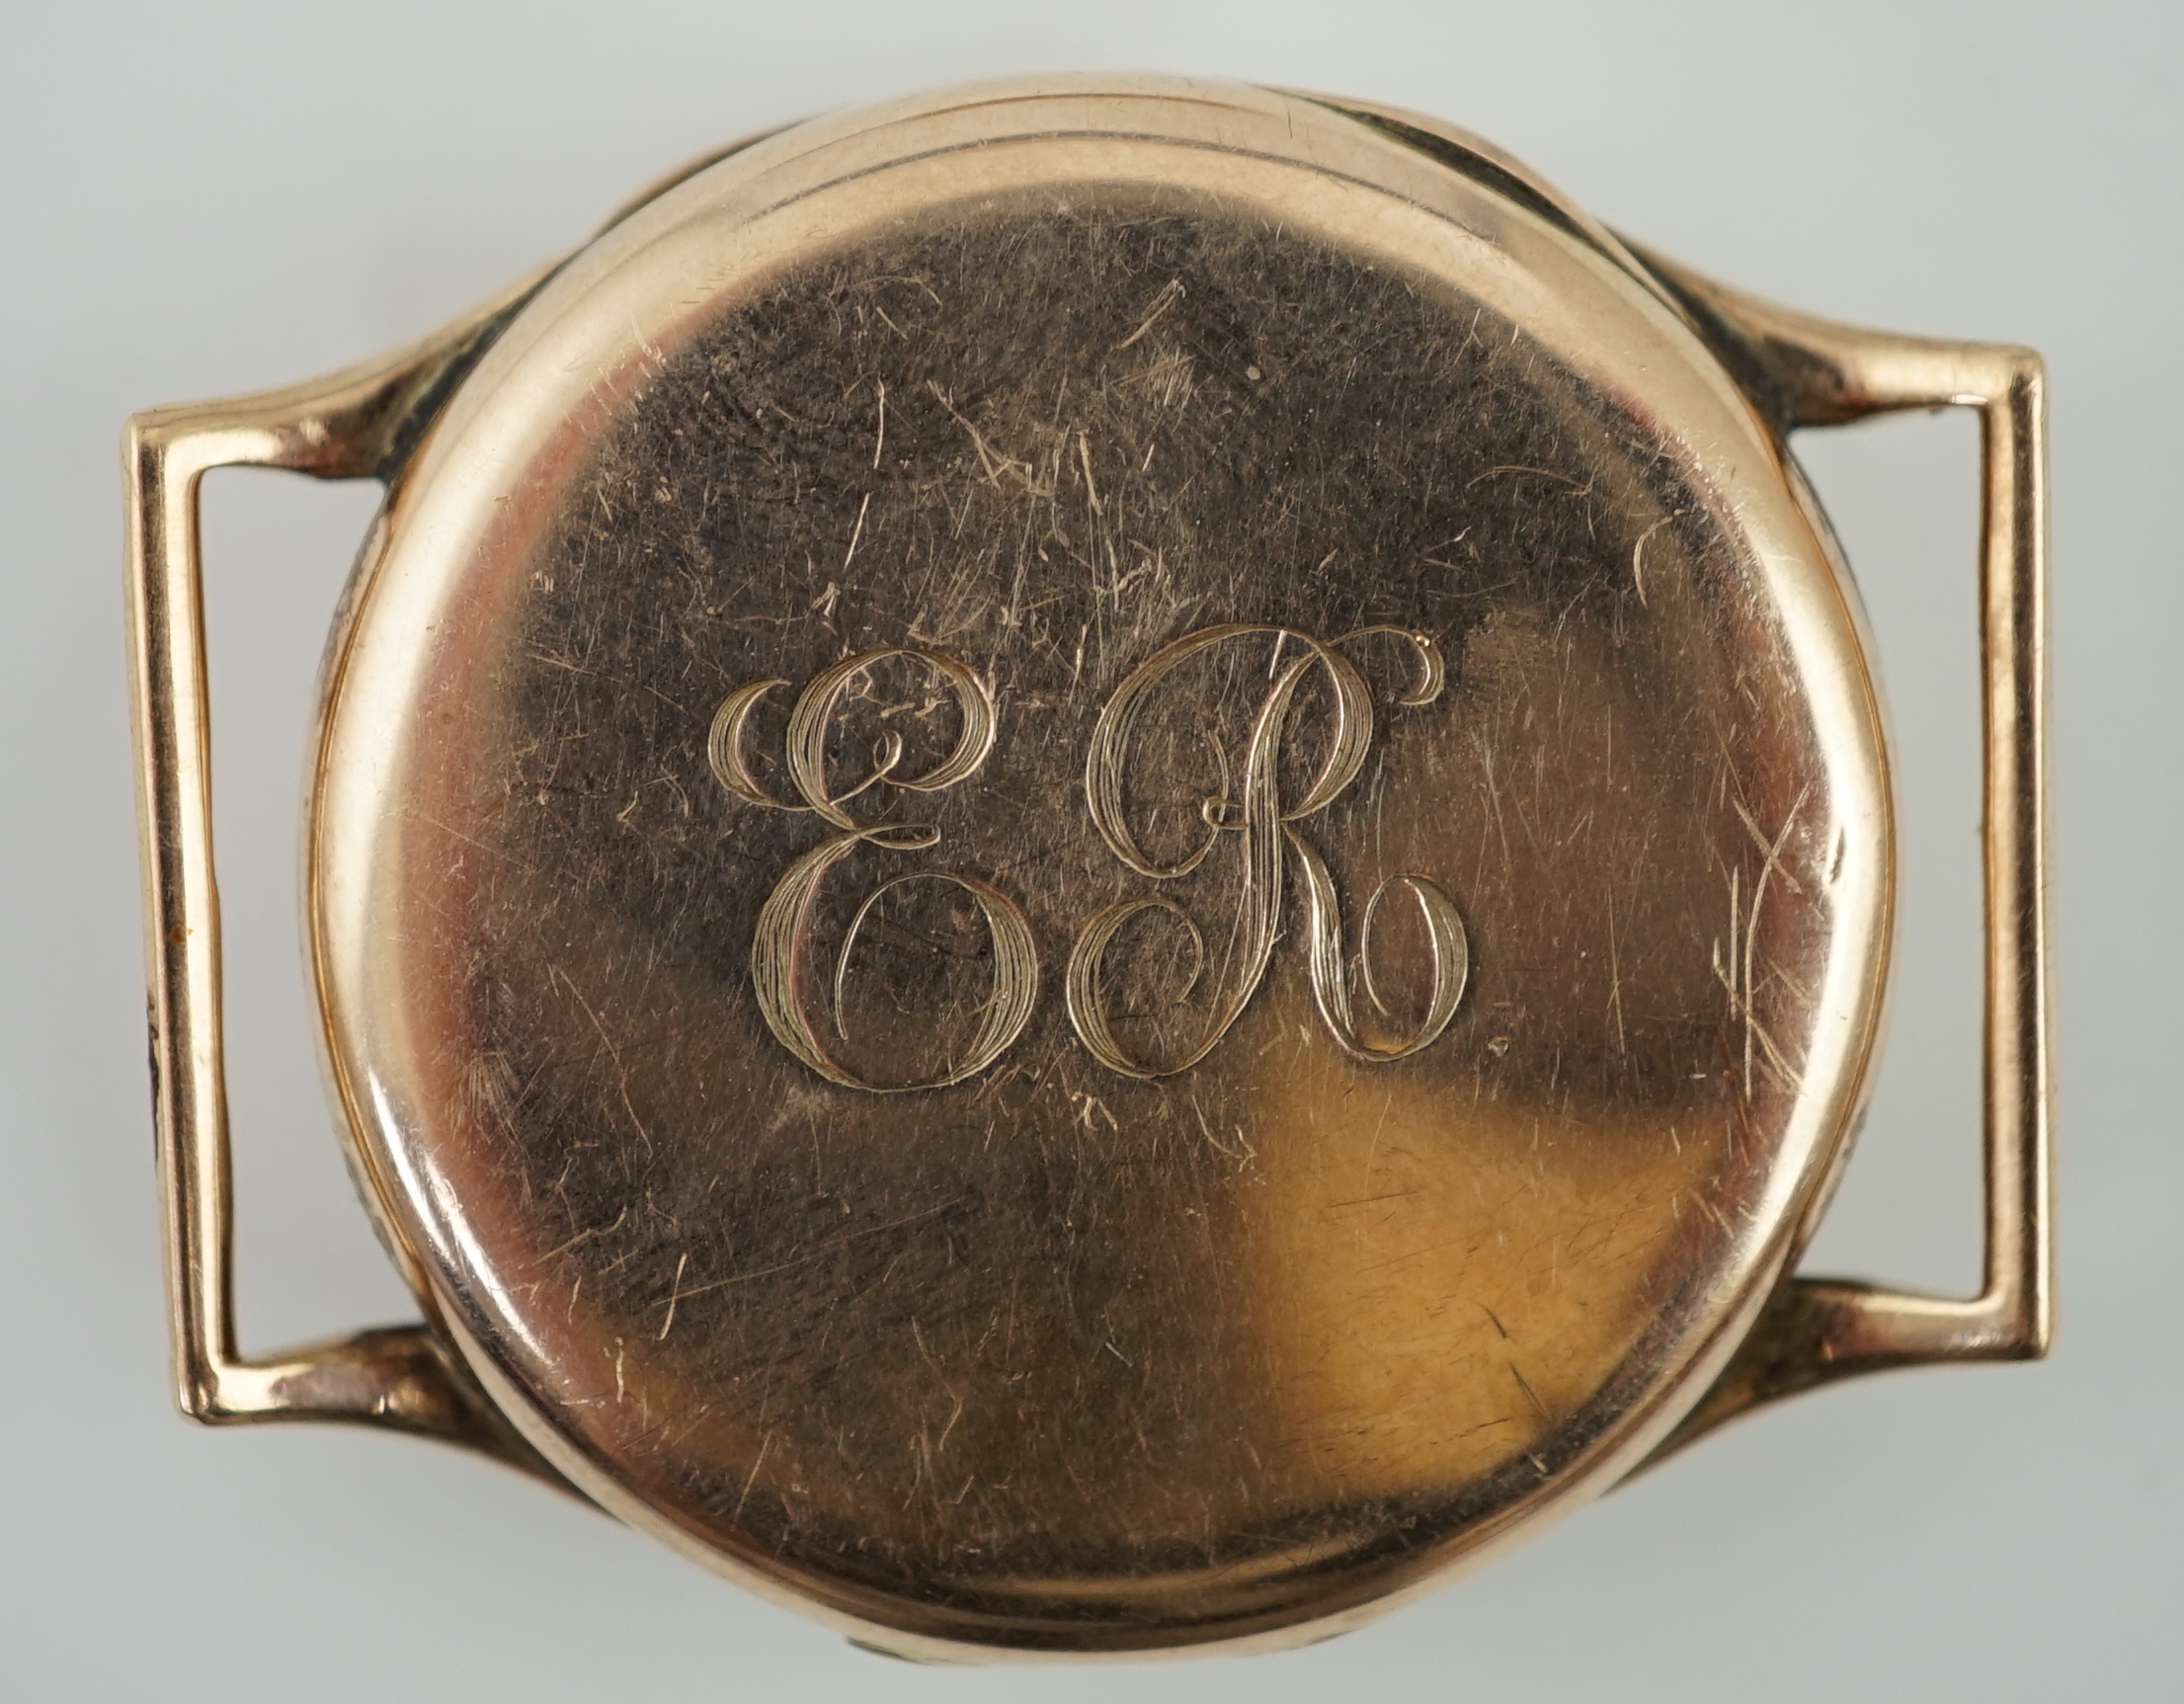 A George V 9ct gold Rolex manual wind wrist watch